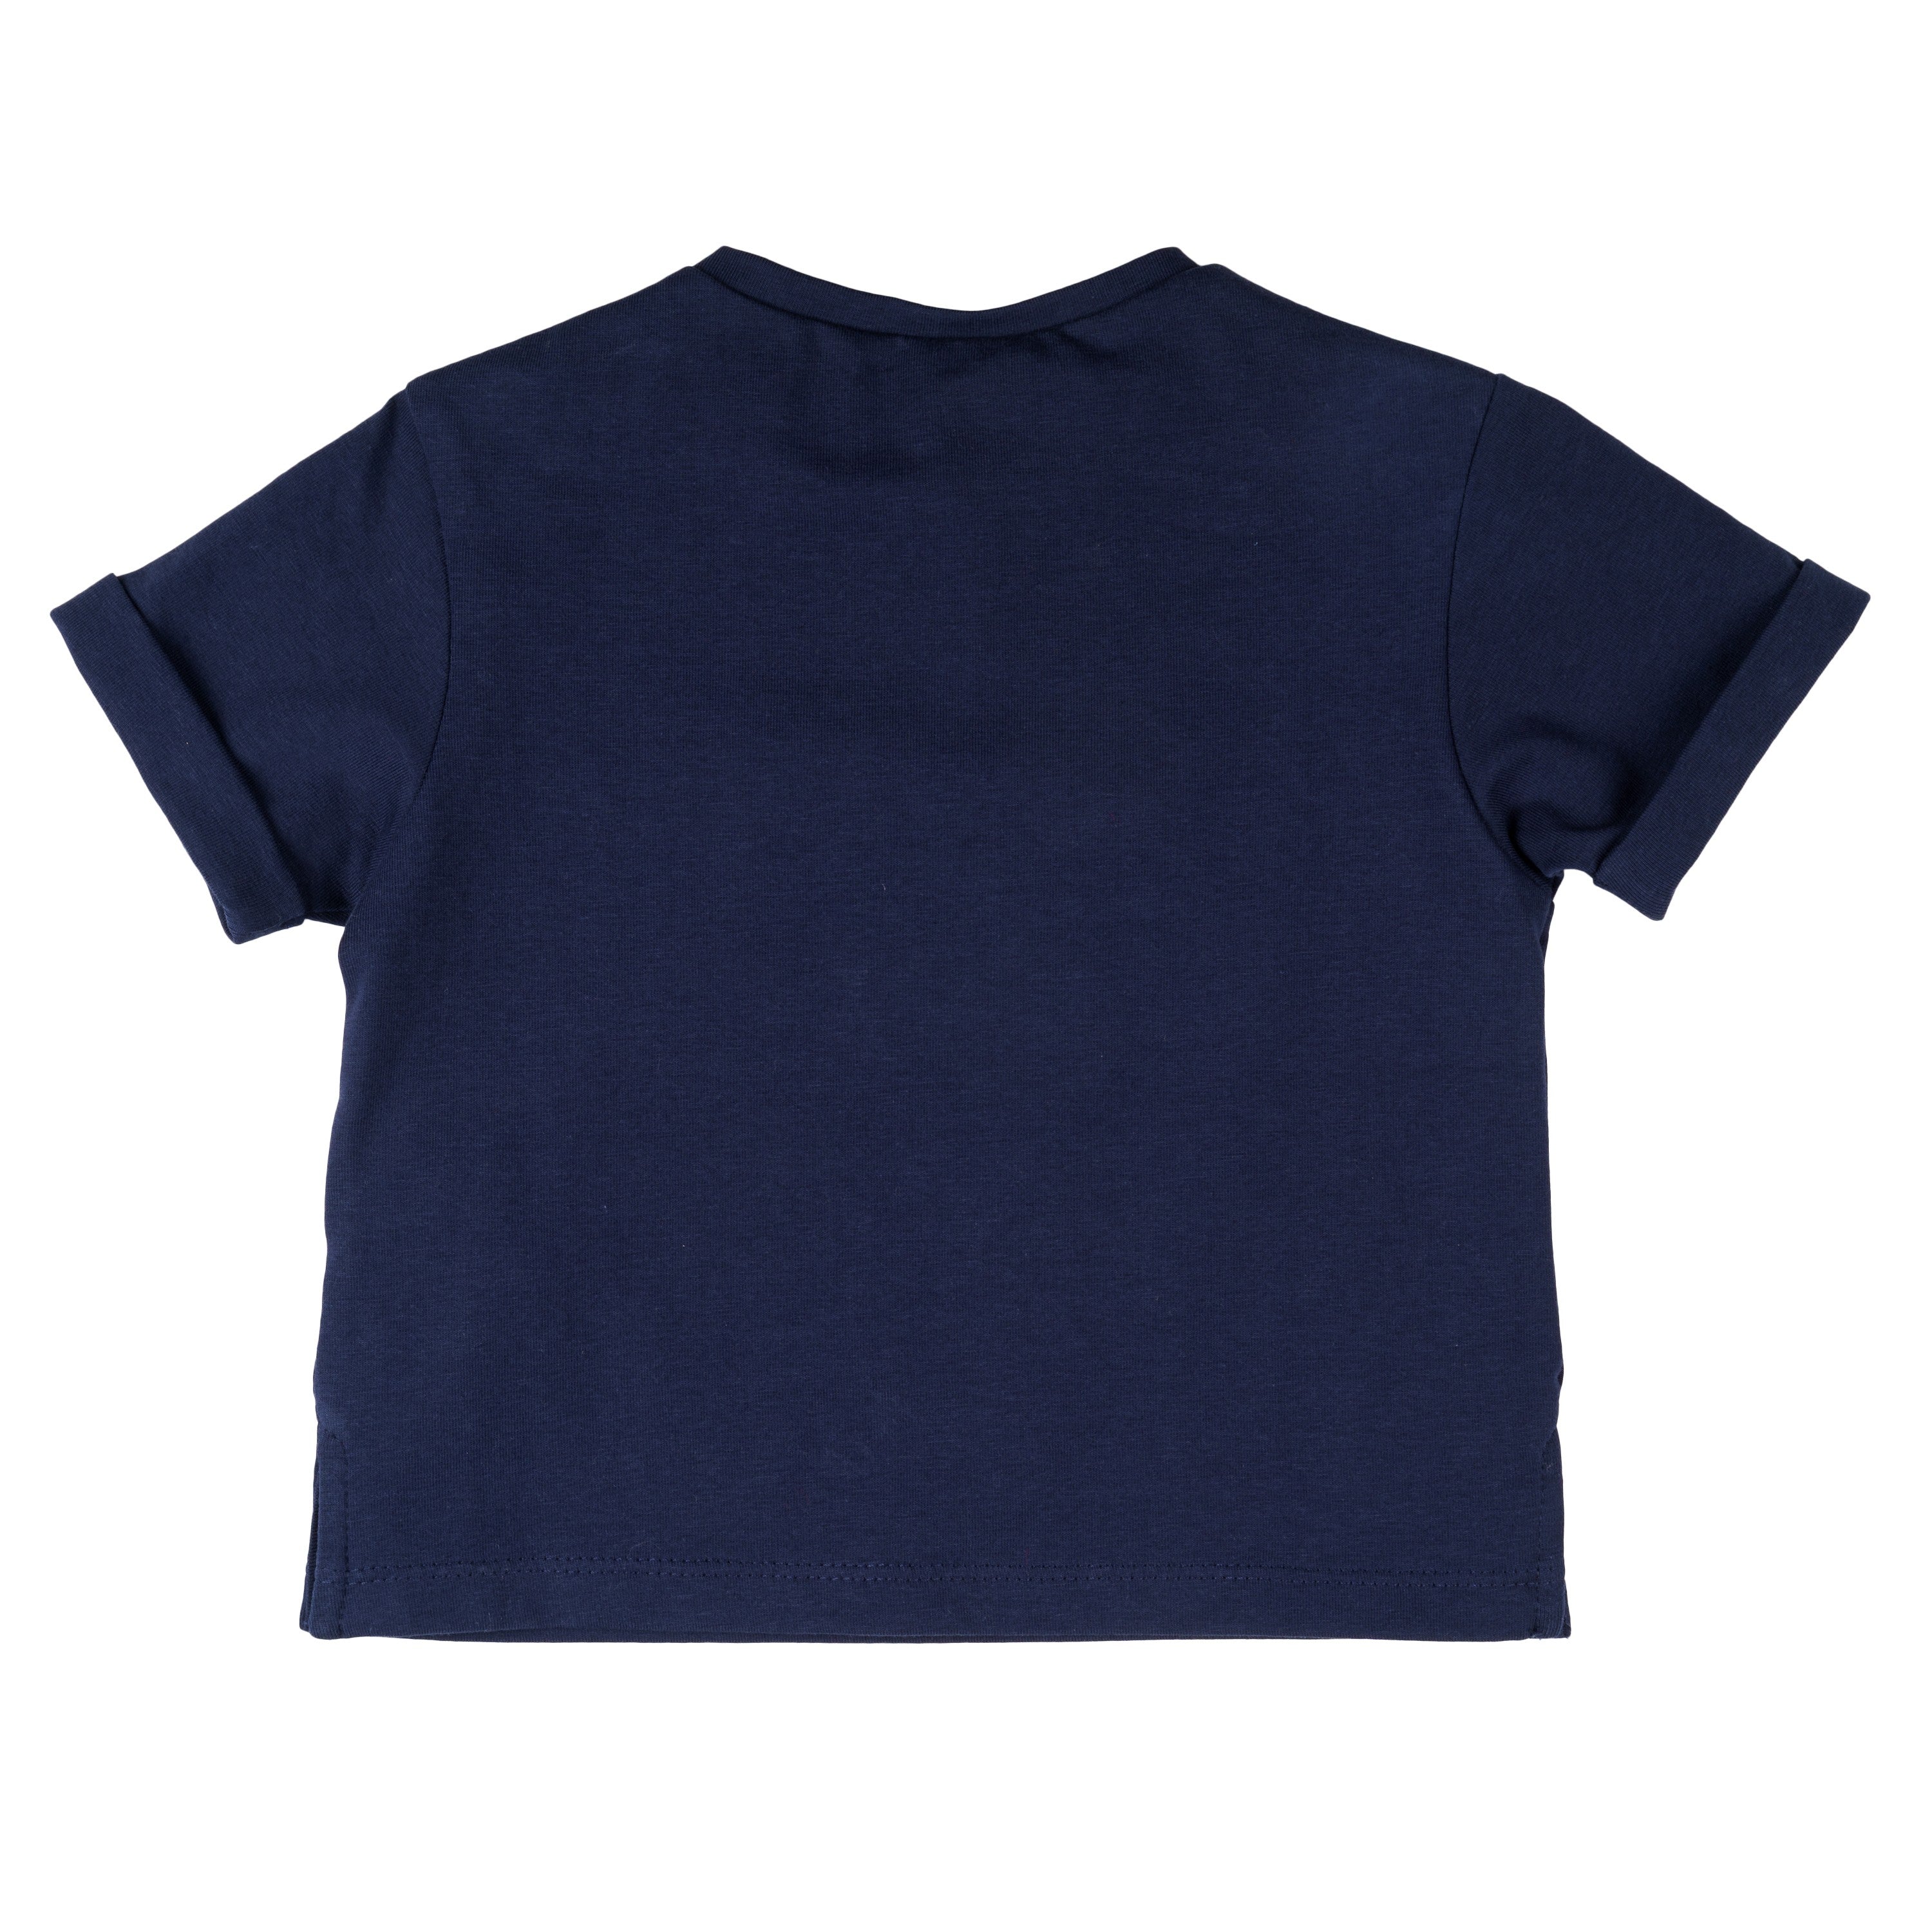 Camiseta de bebé marino VERANO/Outlet